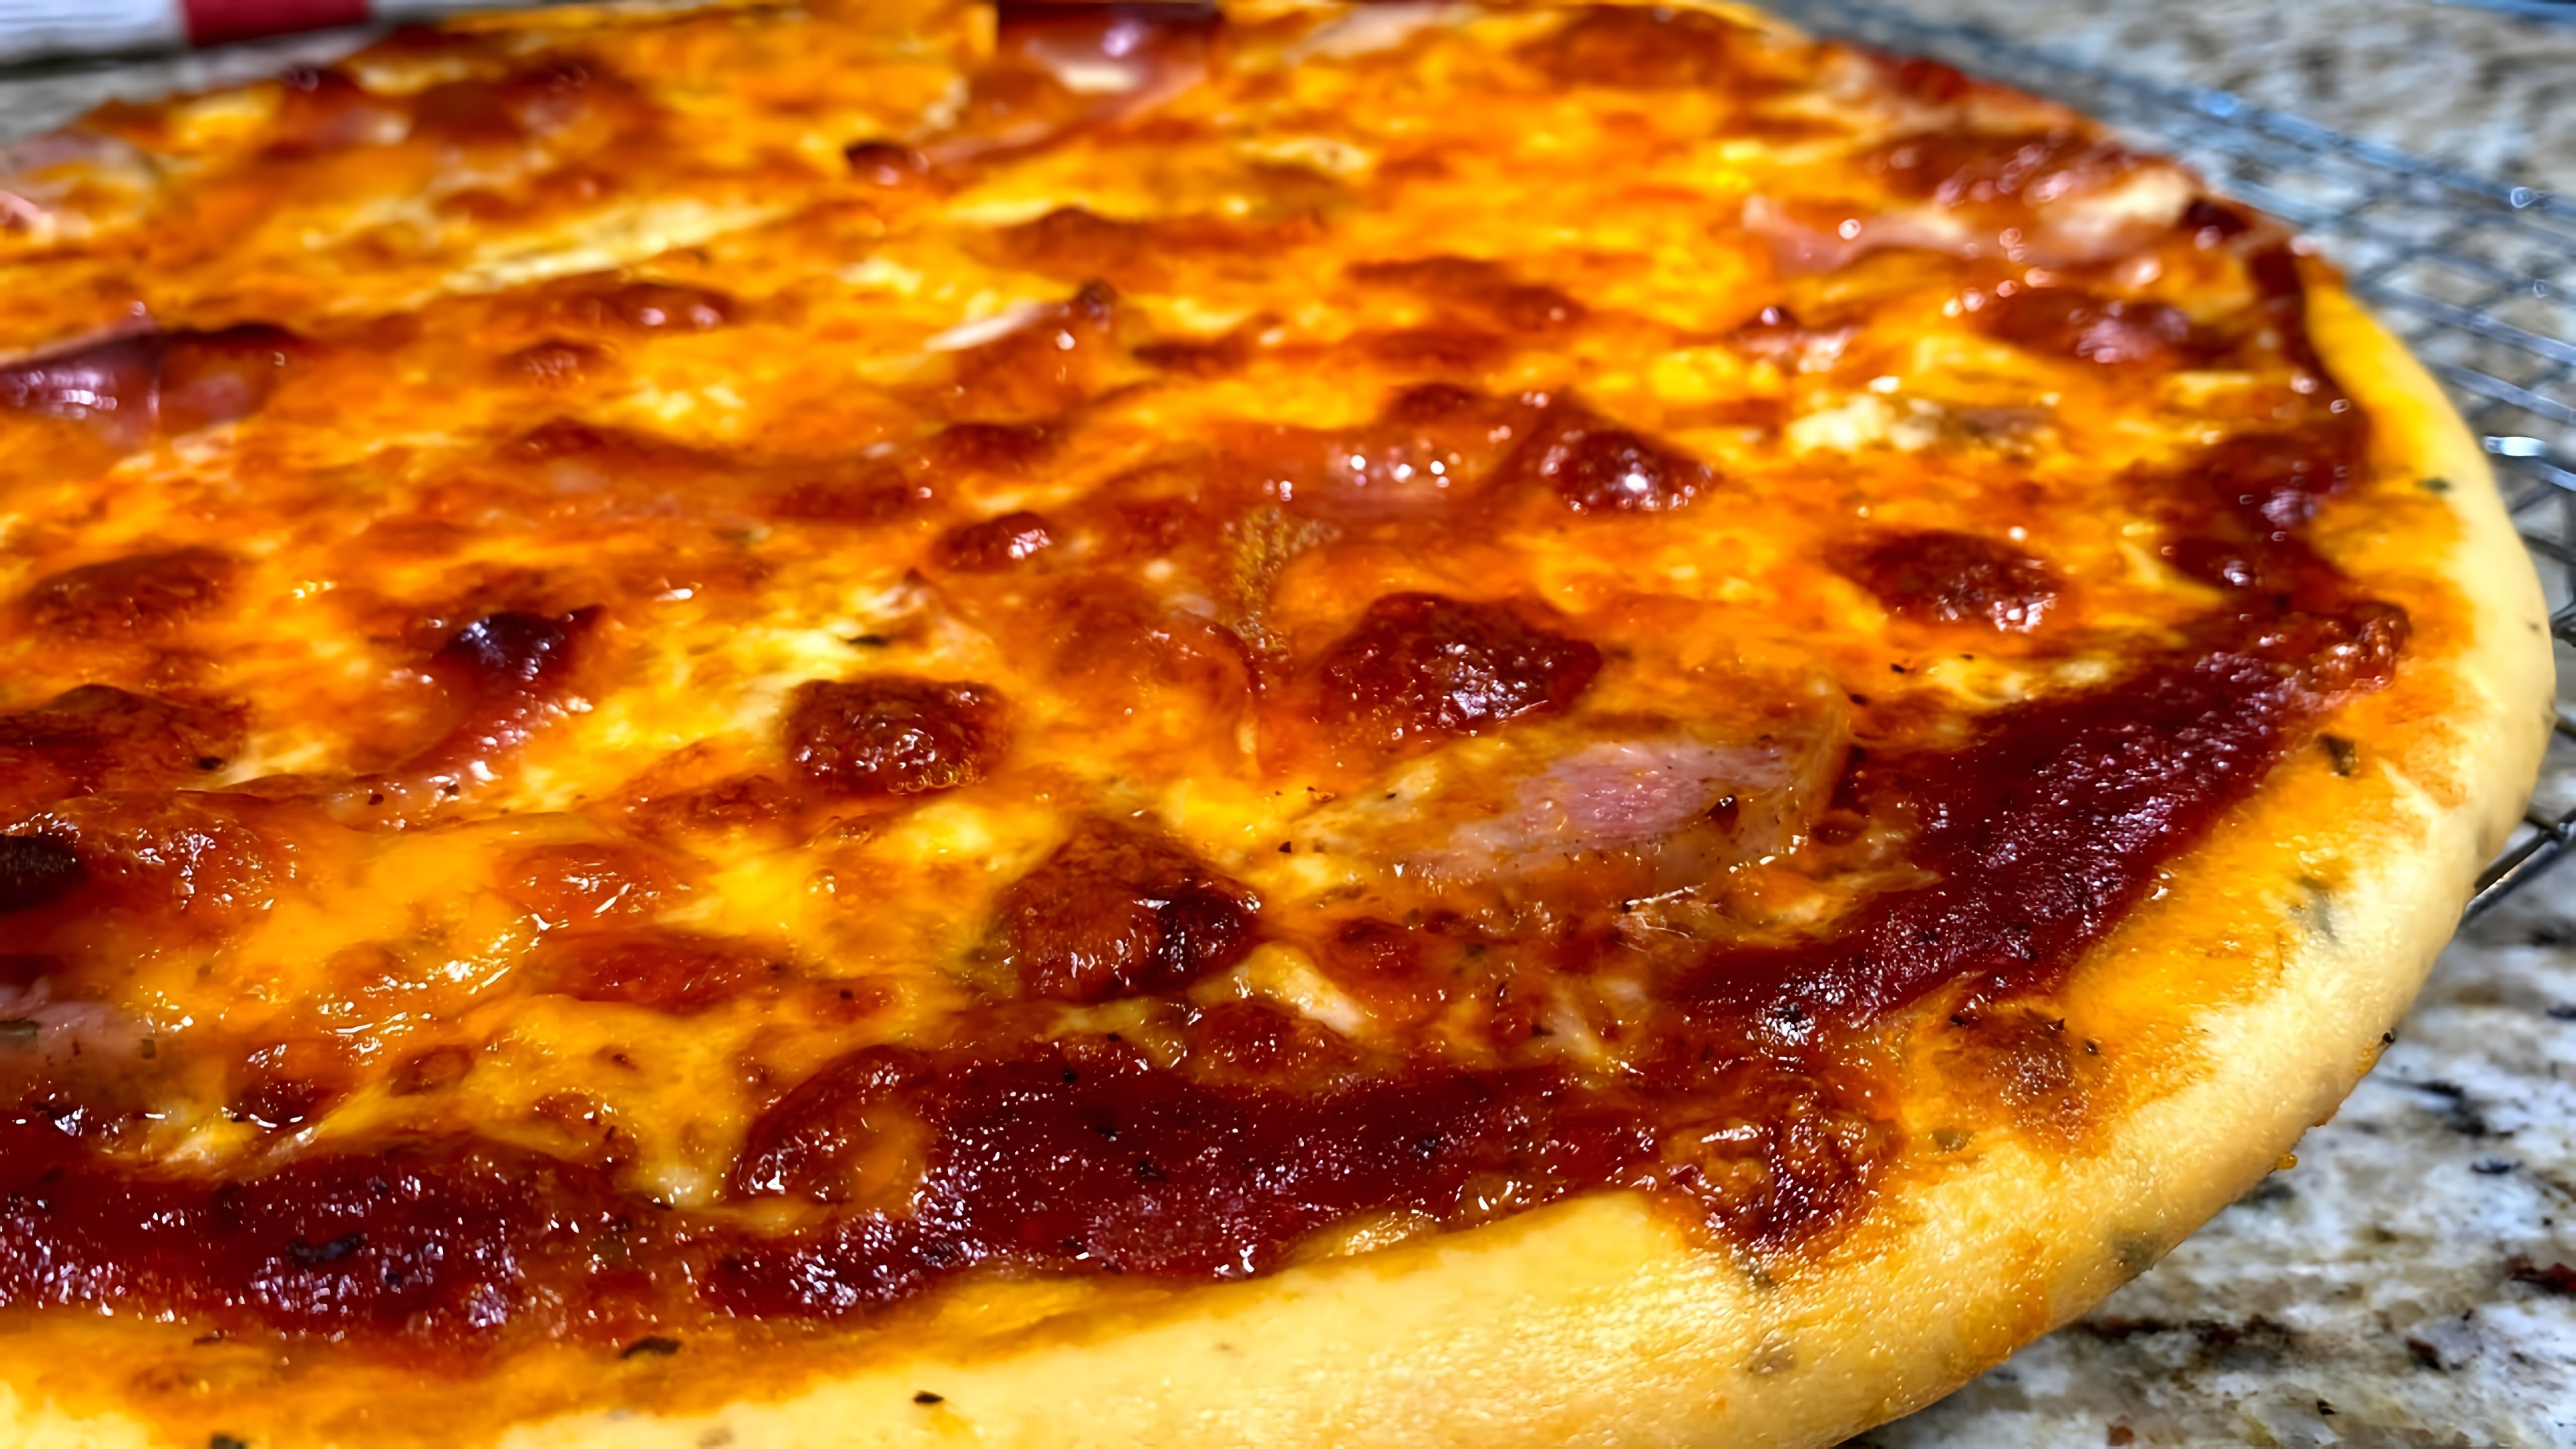 В этом видео демонстрируется процесс приготовления домашней пиццы с использованием теста и томатного соуса